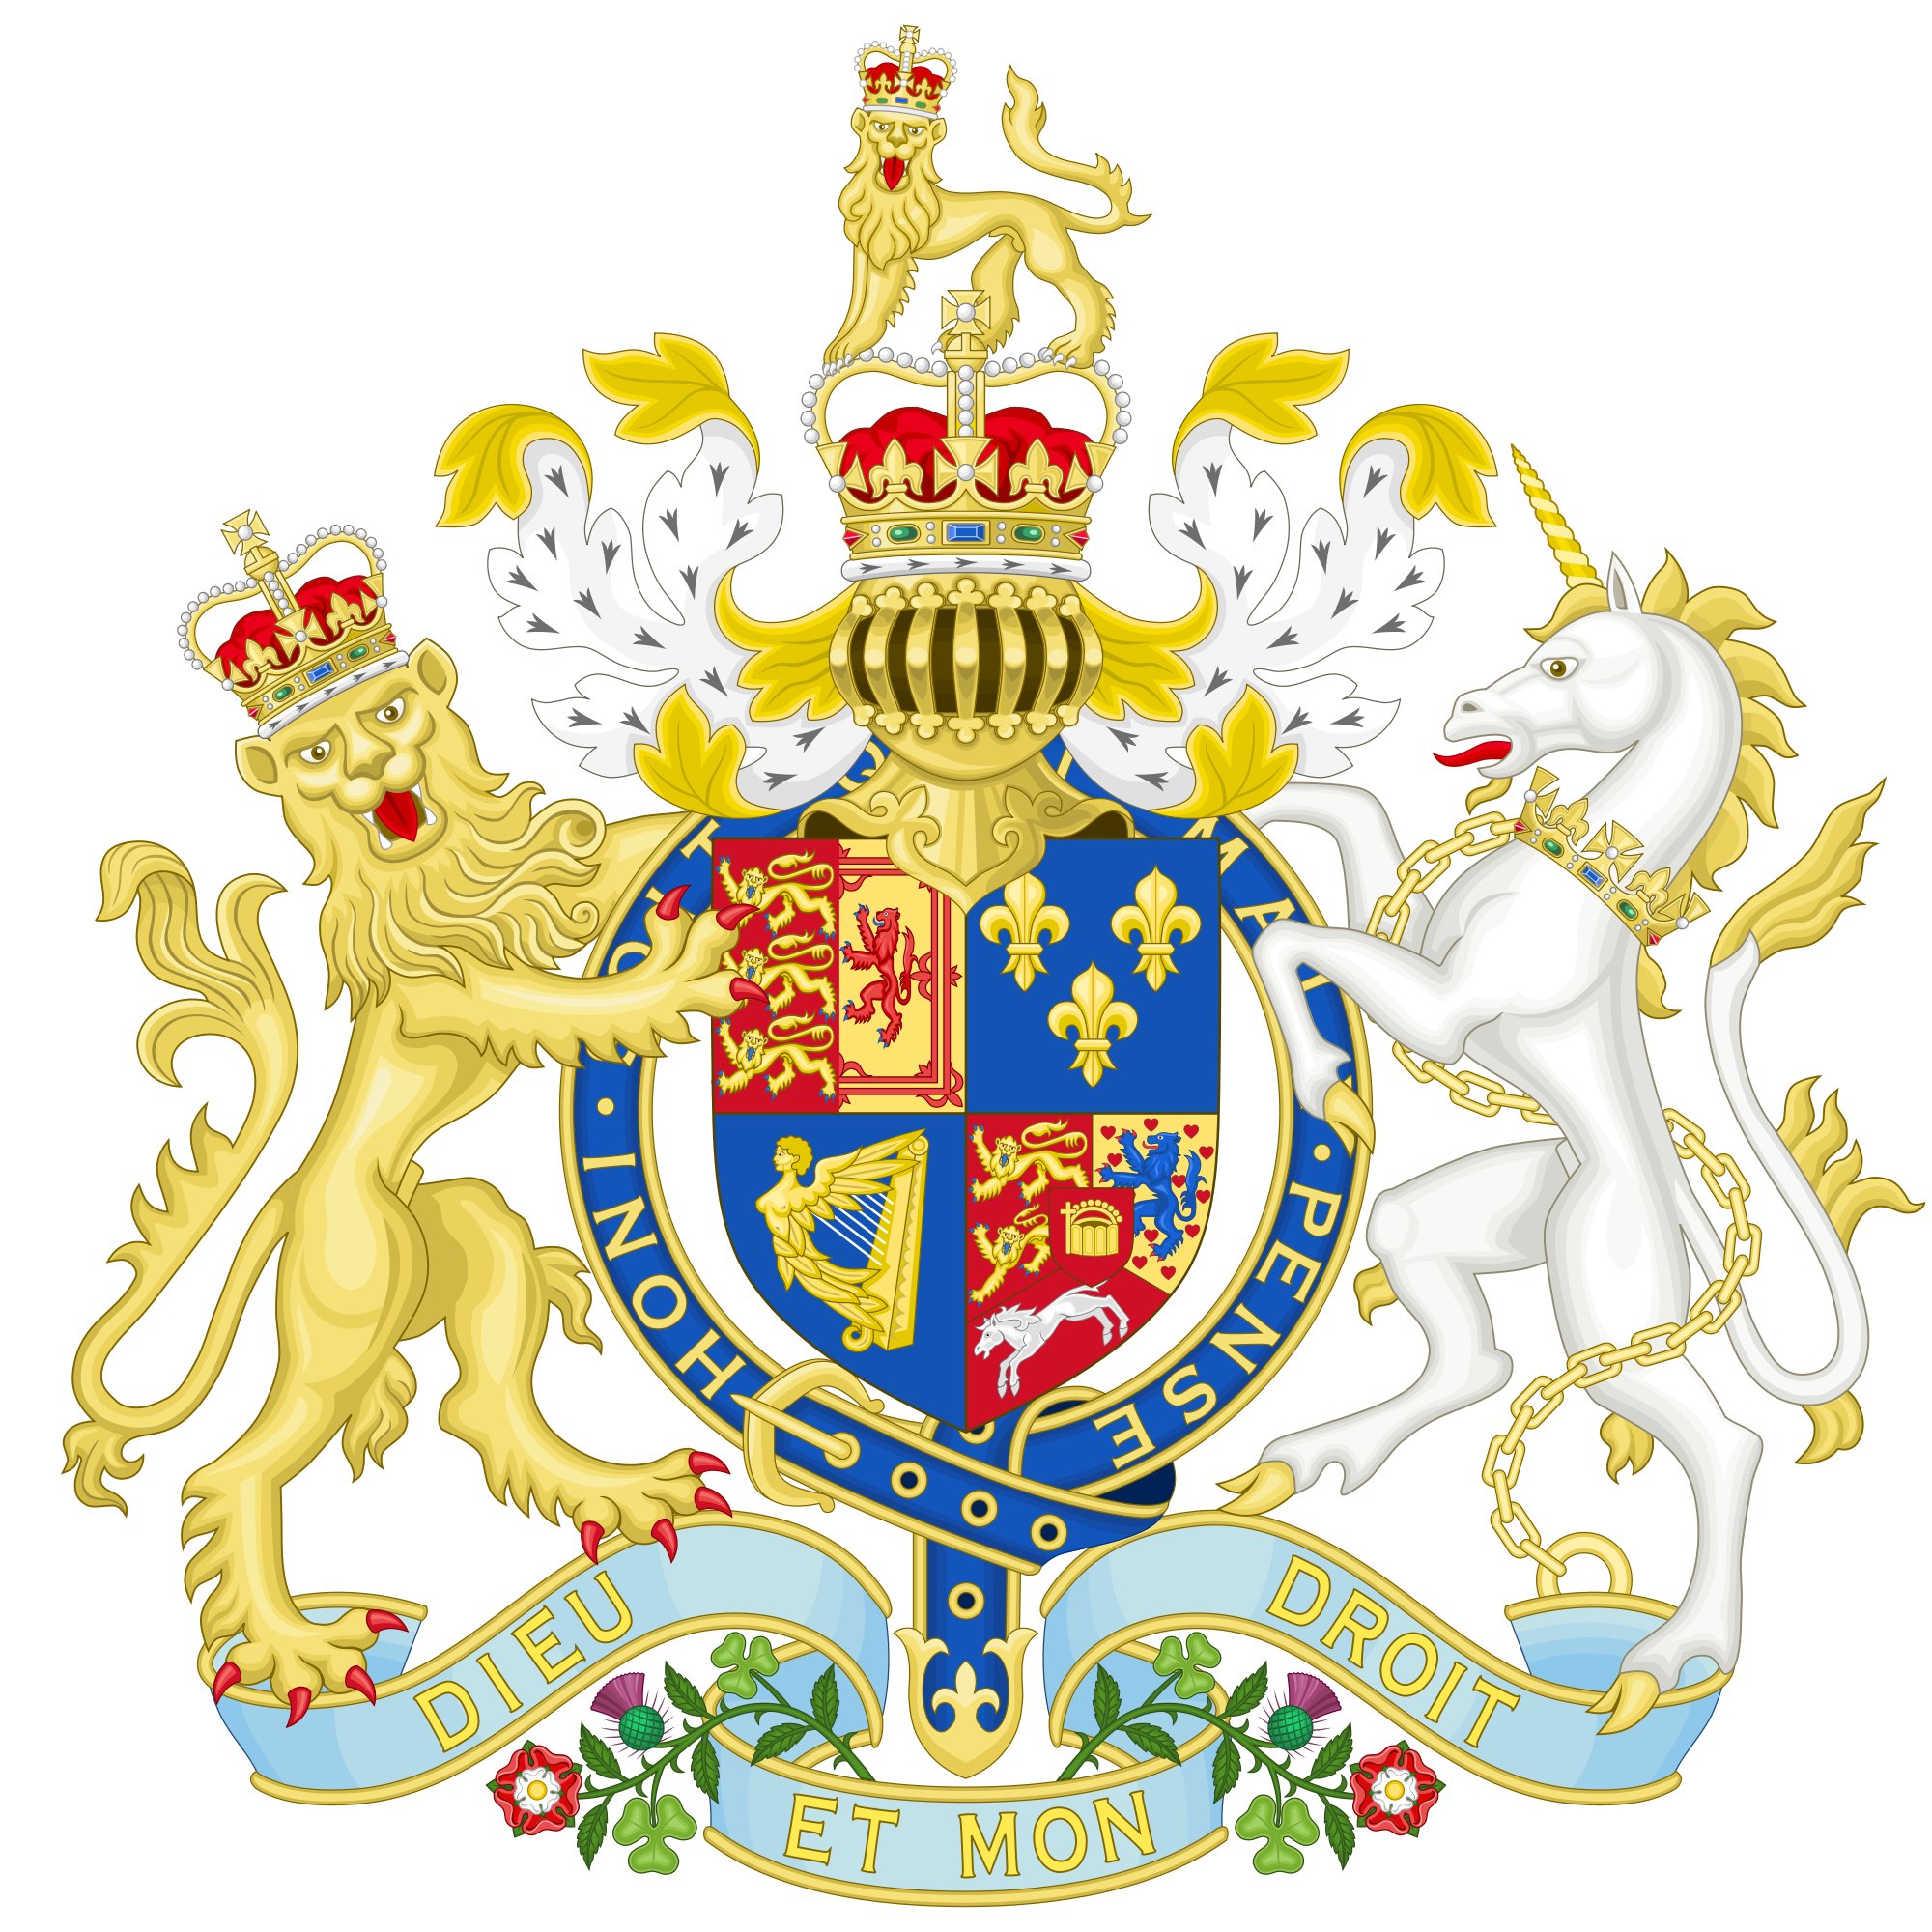 这是英国国徽,简单的介绍一下: 两只动物中,左边戴皇冠的狮子是指